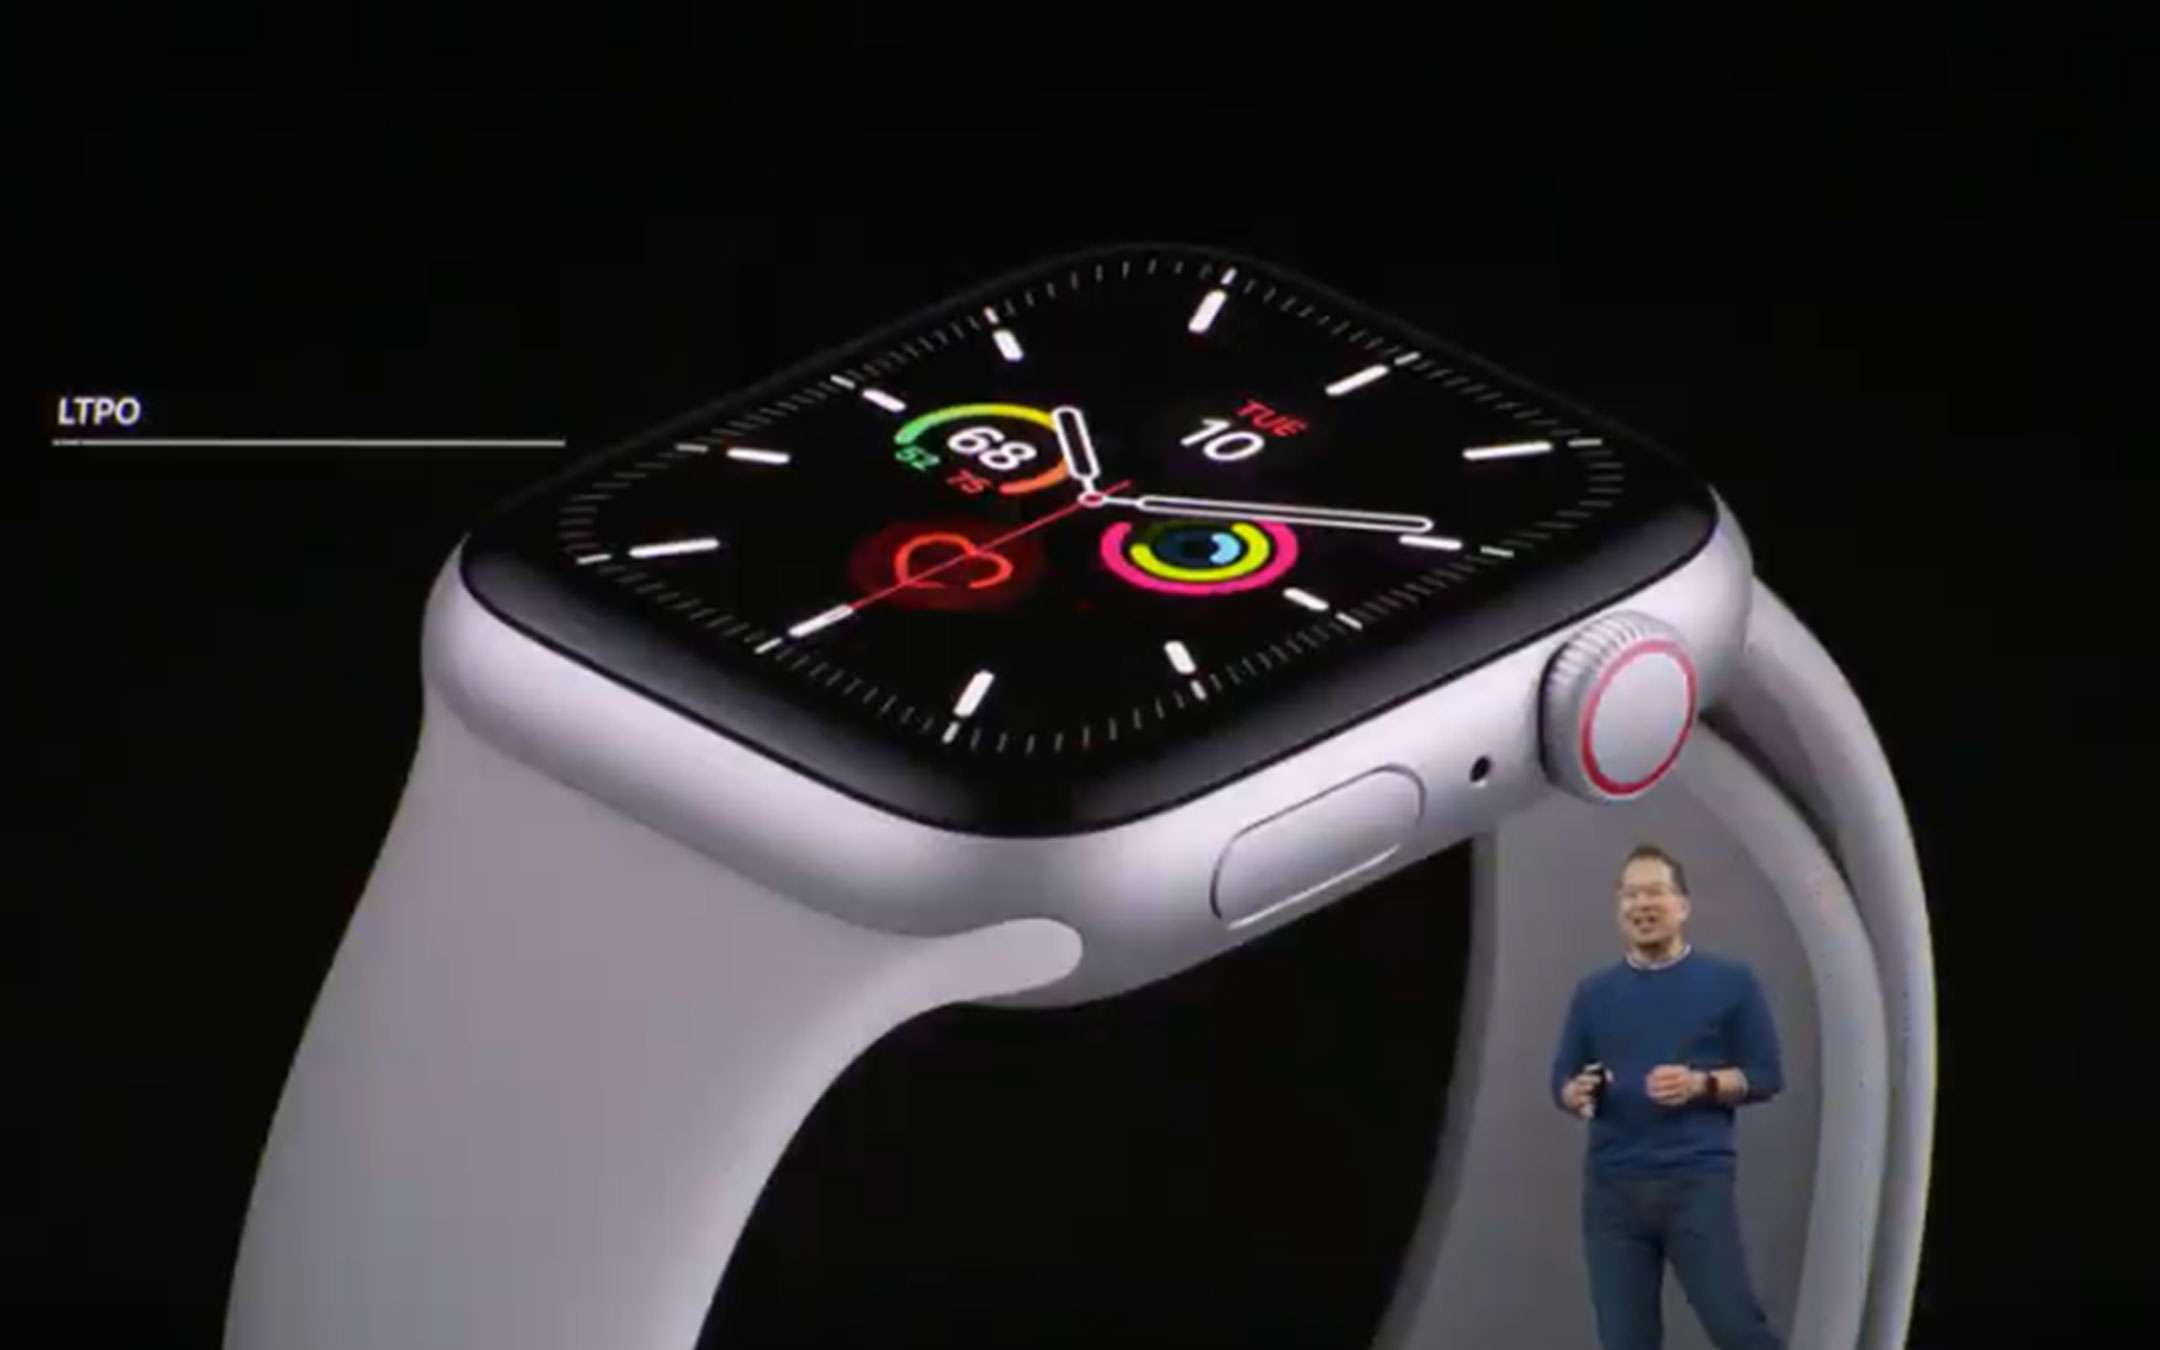 Apple Watch Serie 5 è ufficiale: tutti i dettagli